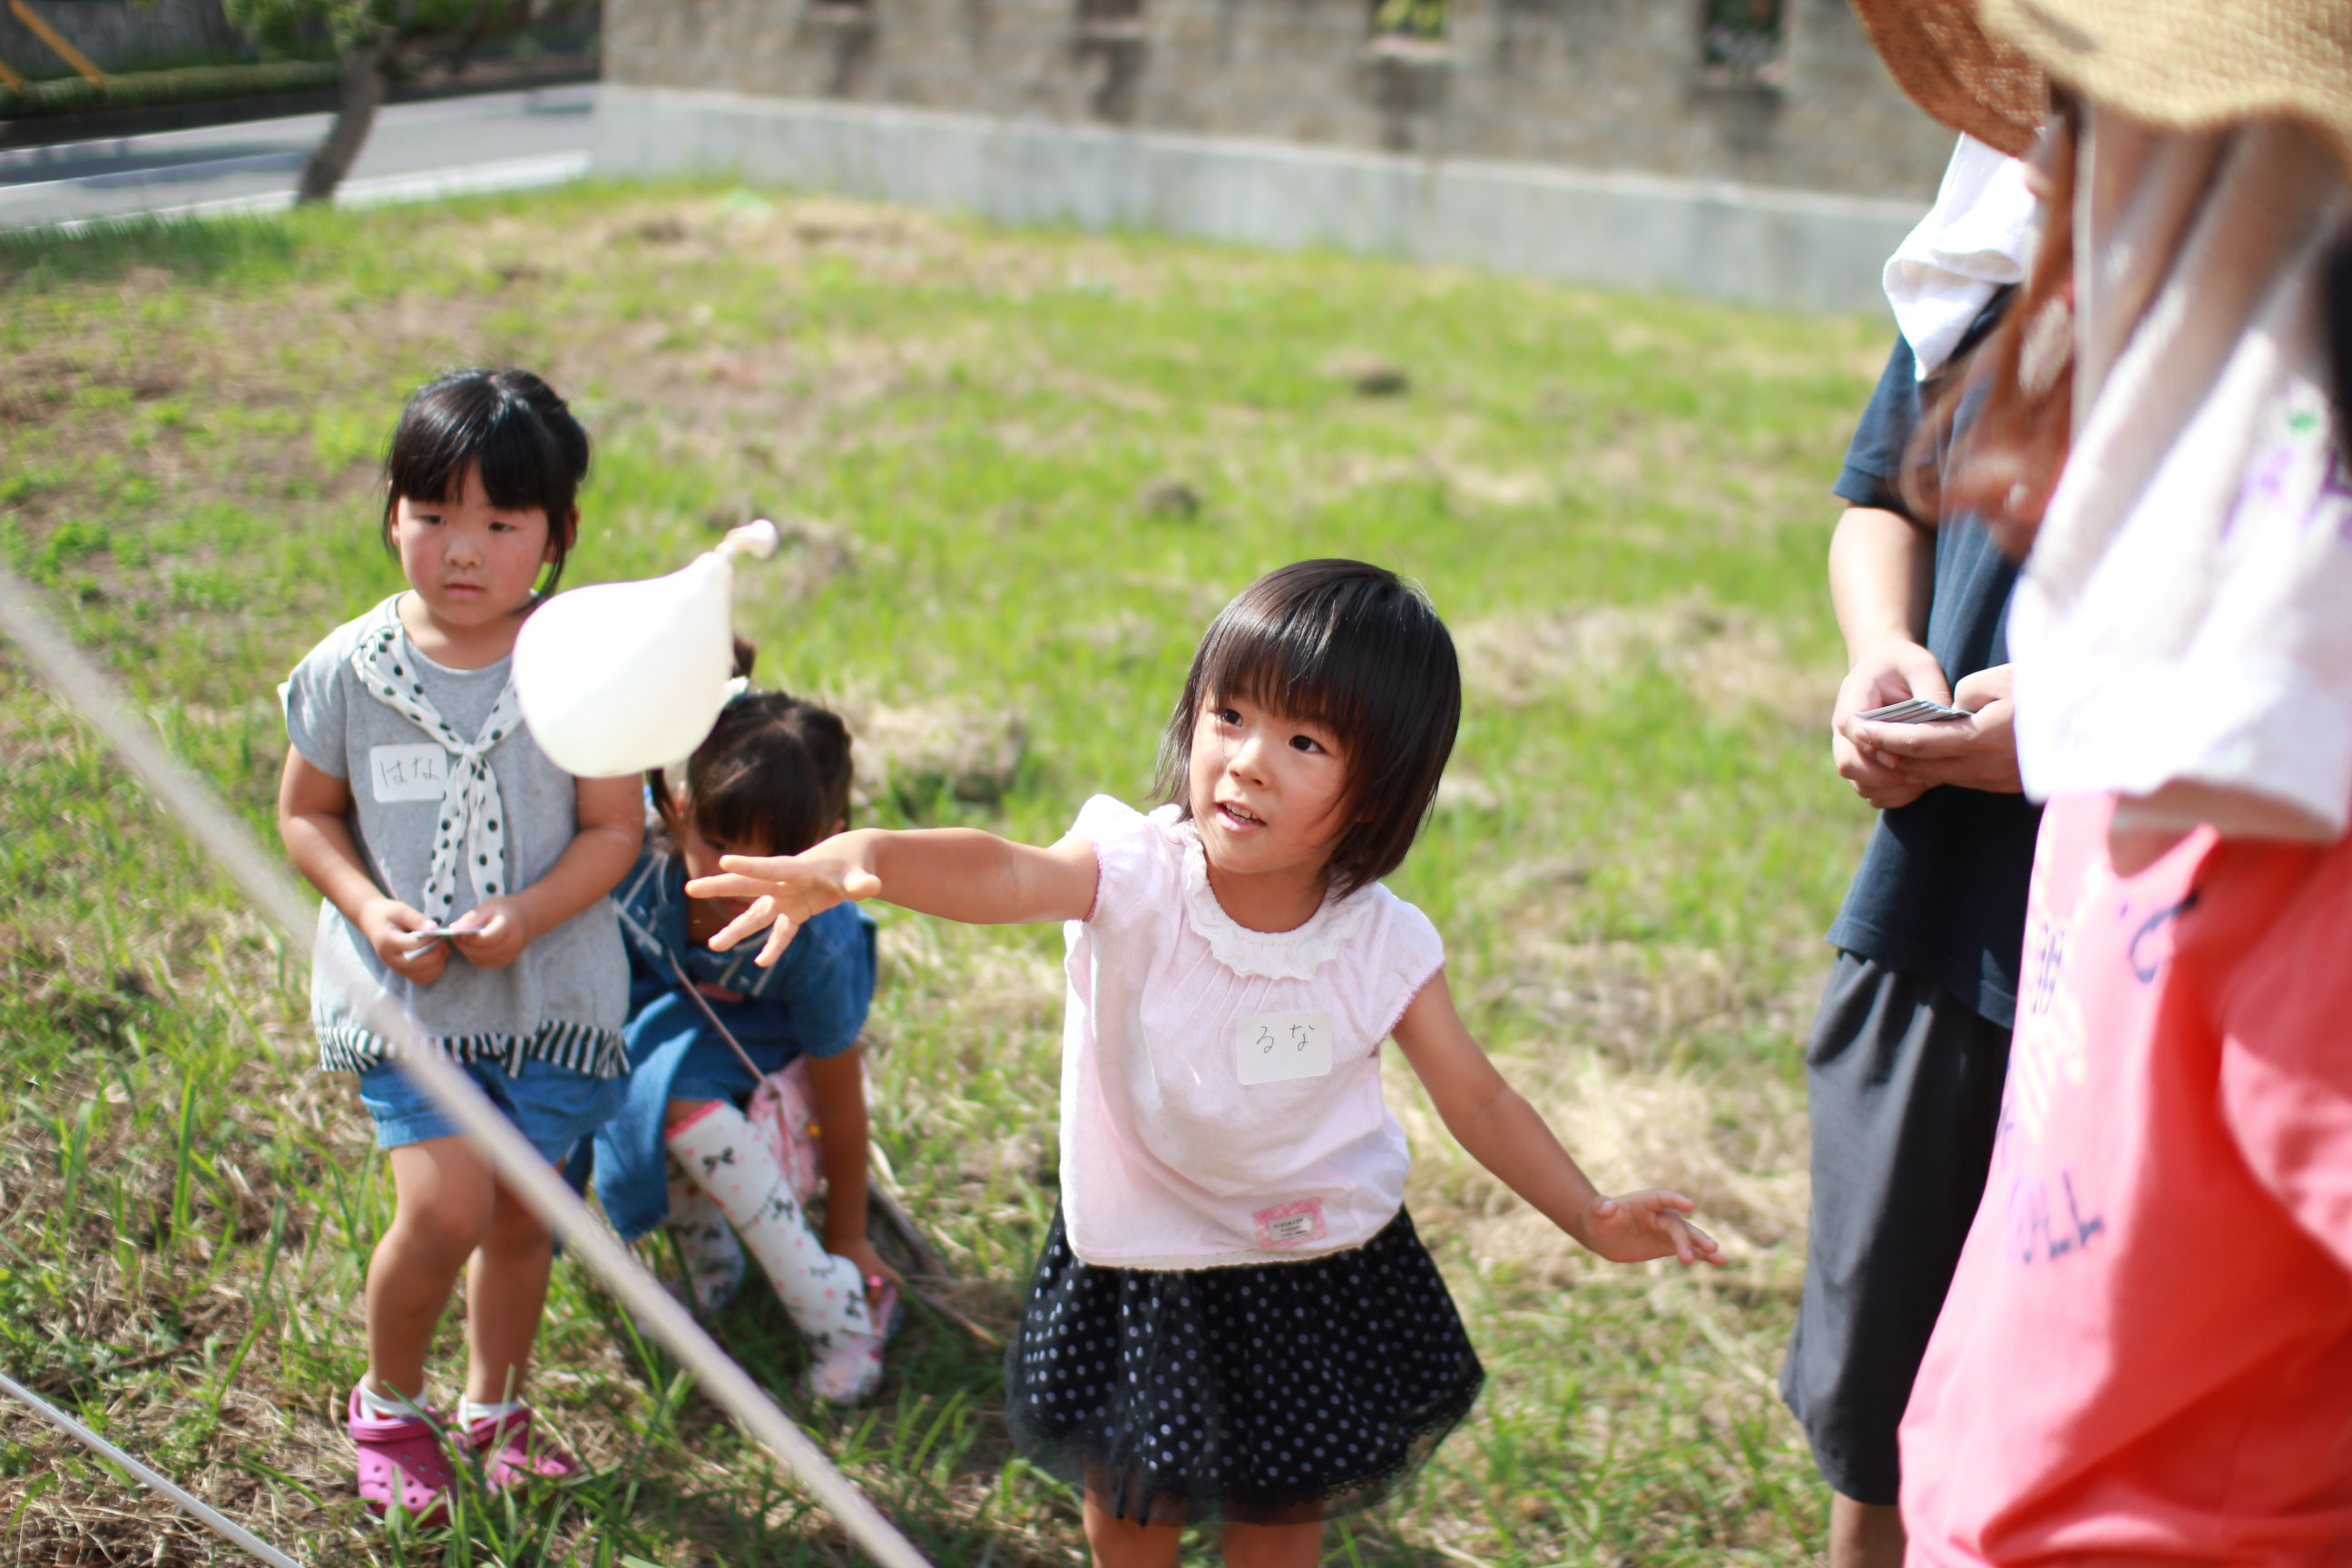 d98a24433e64834a643cf8943f6bab16.jpg : 30차 @@30차[일본선교]에서 [31차 겨울 일본선교]를 위한 개선이 가능한 몇가지 제안 + 잼있는 사진들(II)